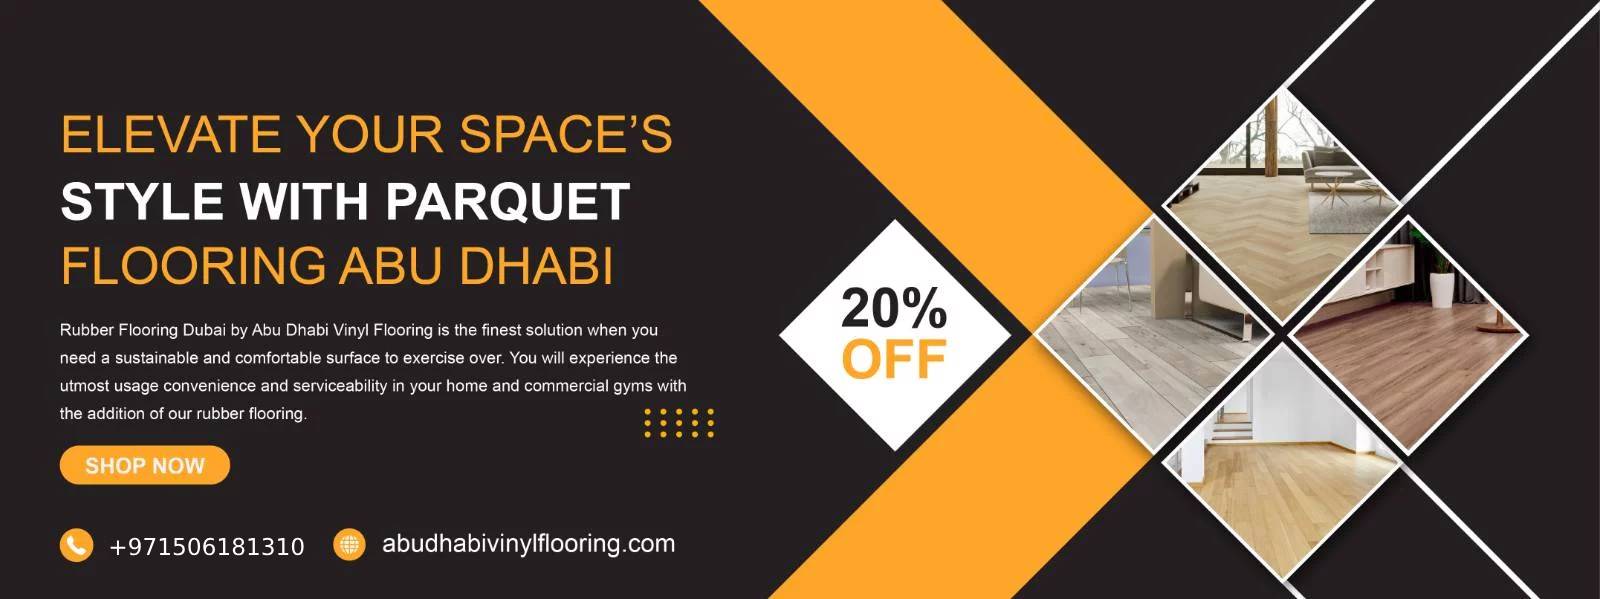 Parquet Flooring Abu Dhabi